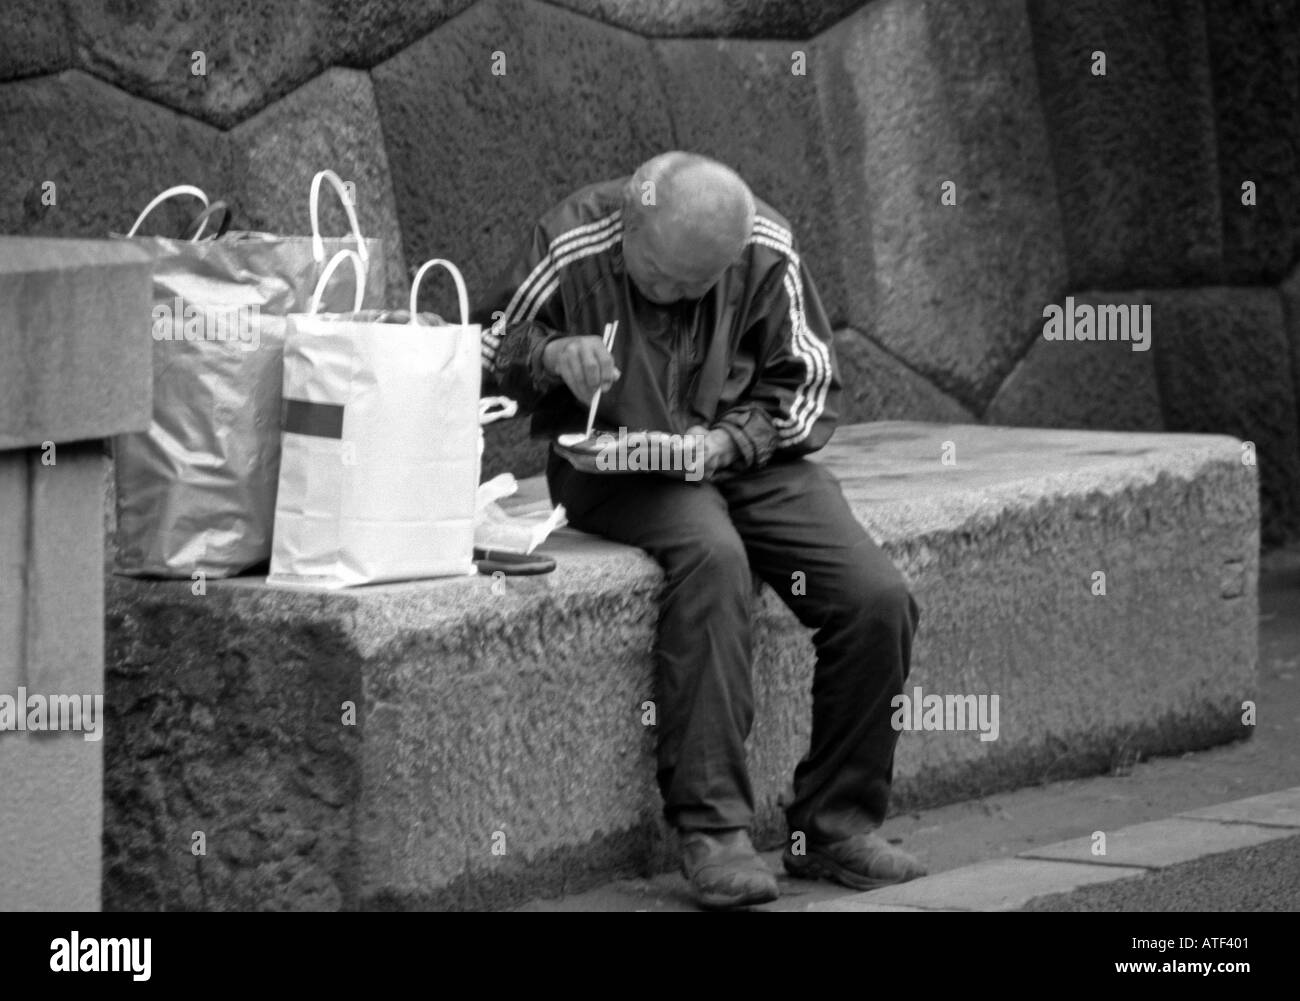 Vecchio senile uomo in grassetto con borse di sedersi sul pubblico banco di calcestruzzo consumano pranzare all'aperto dalla parete di roccia Tokyo Giappone Asia Orientale Foto Stock